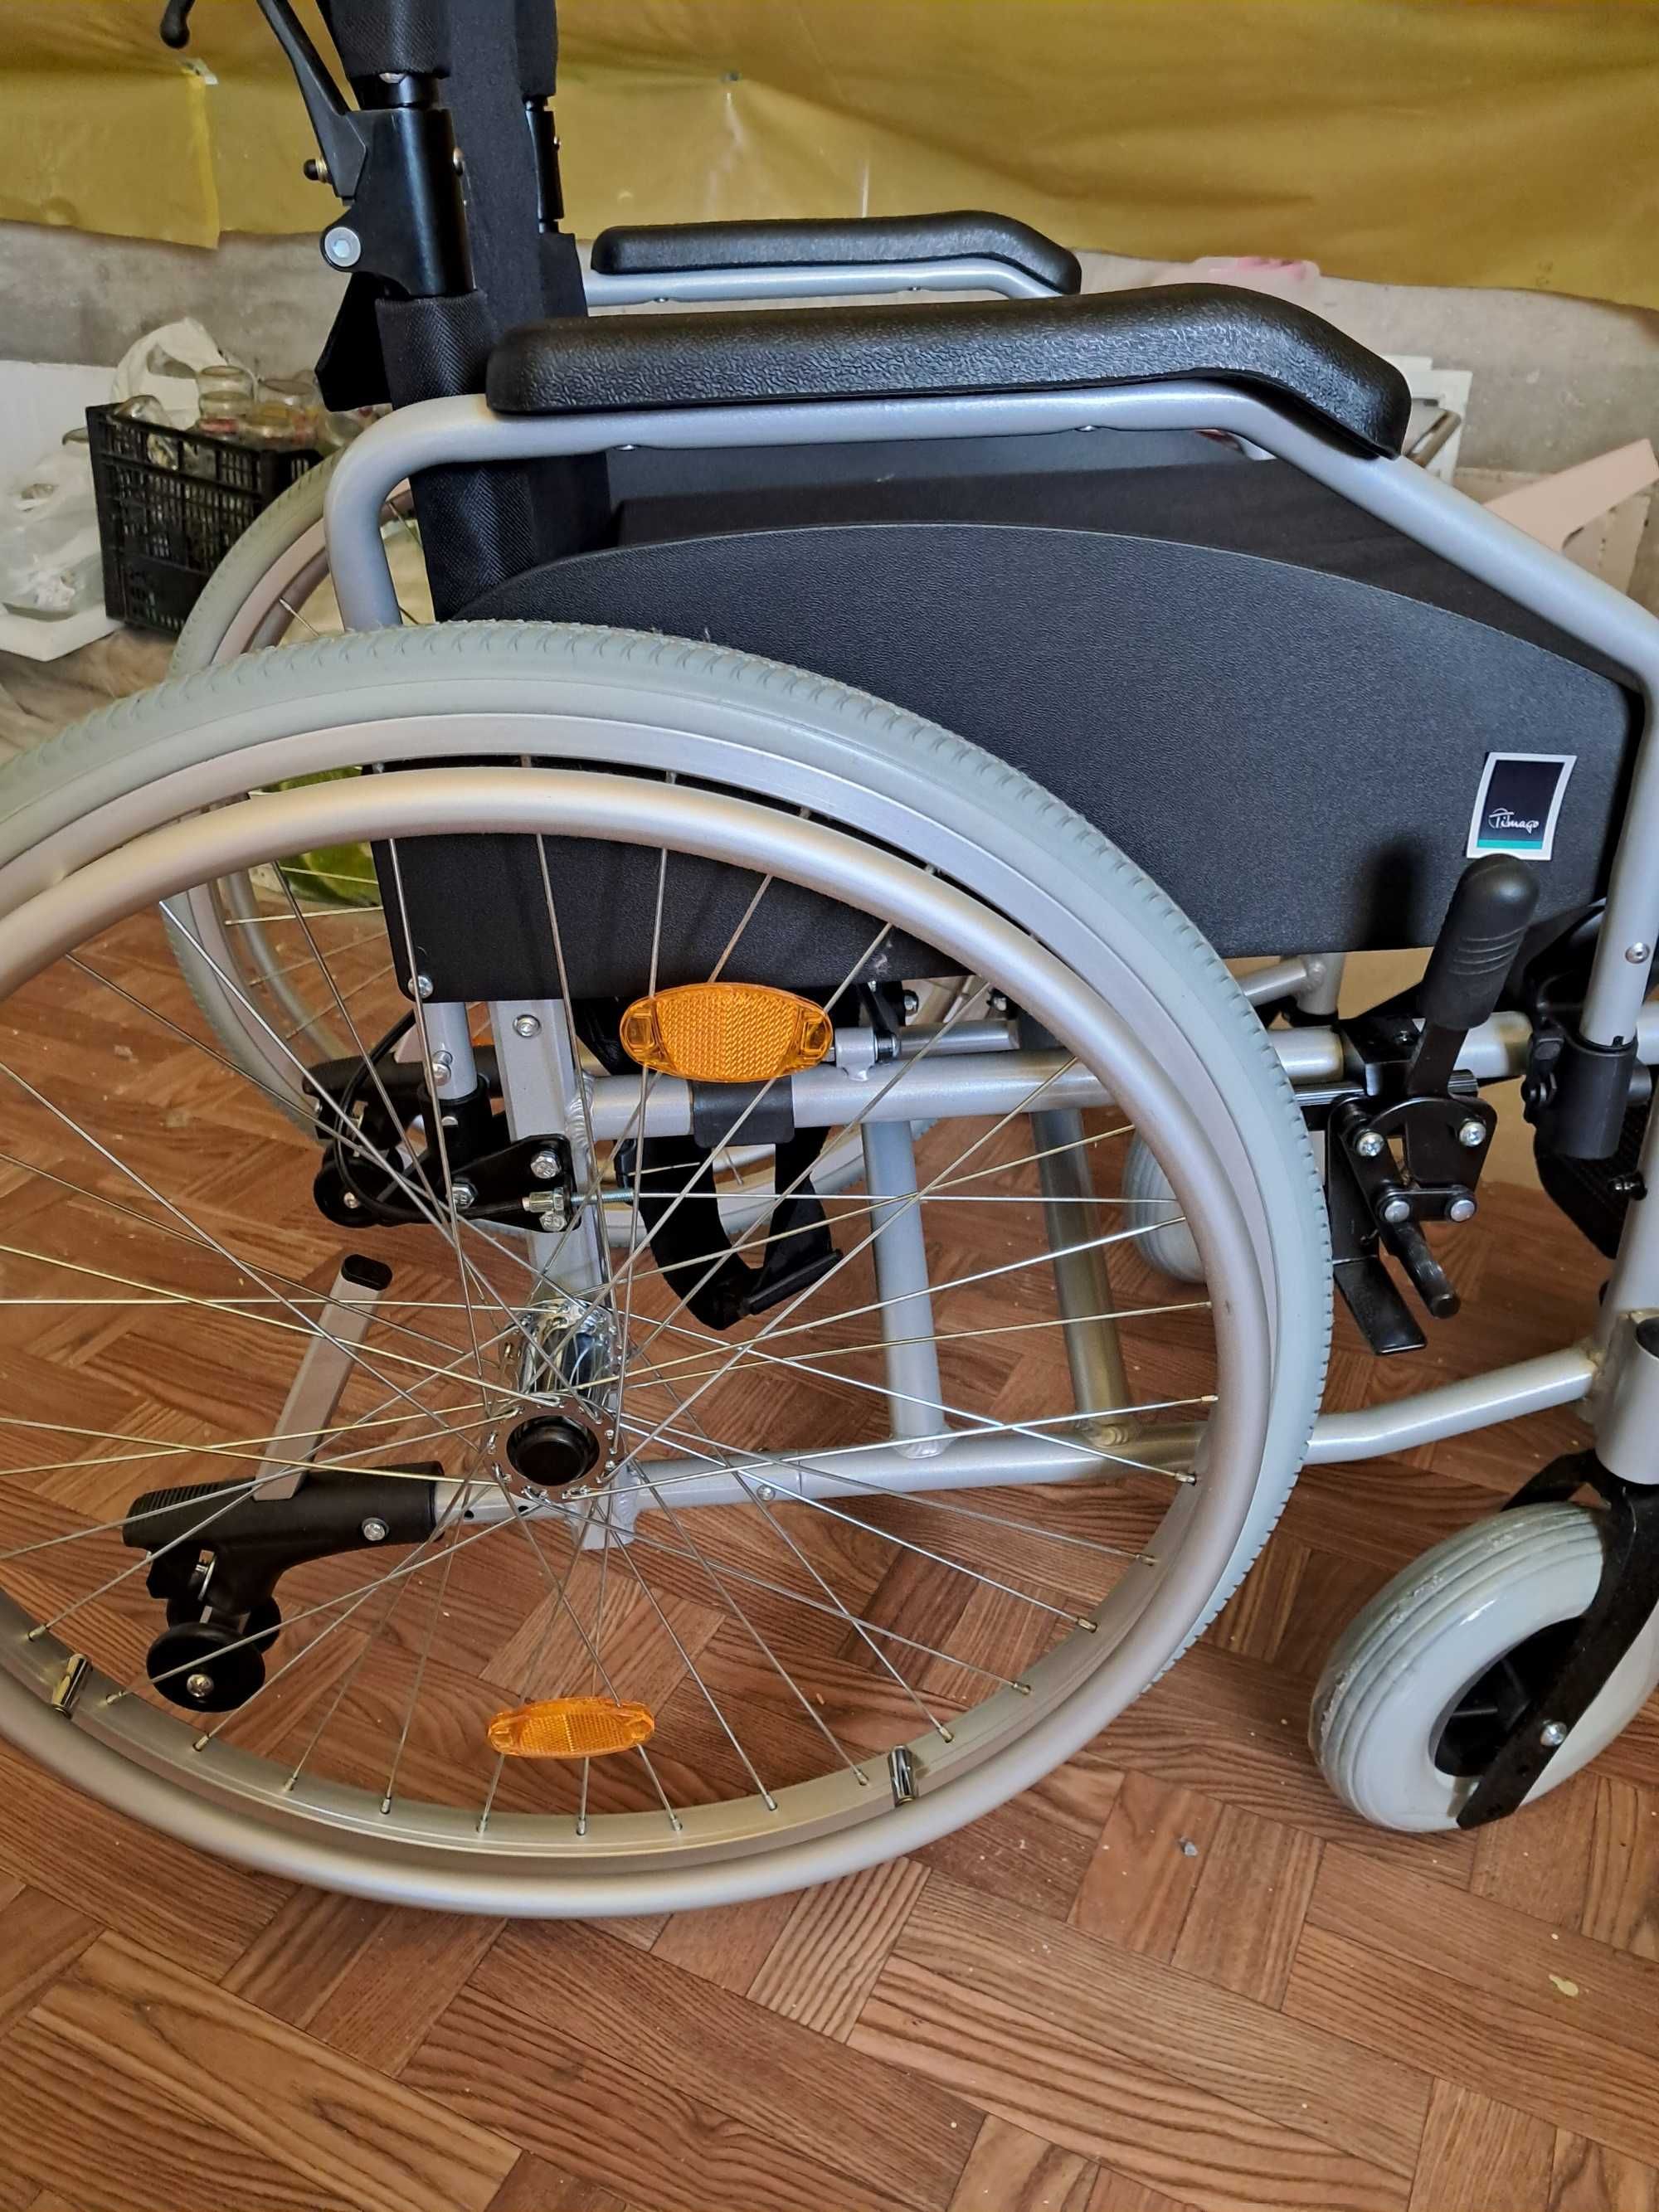 Wózek inwalidzki aluminiowy nowy nie używany.